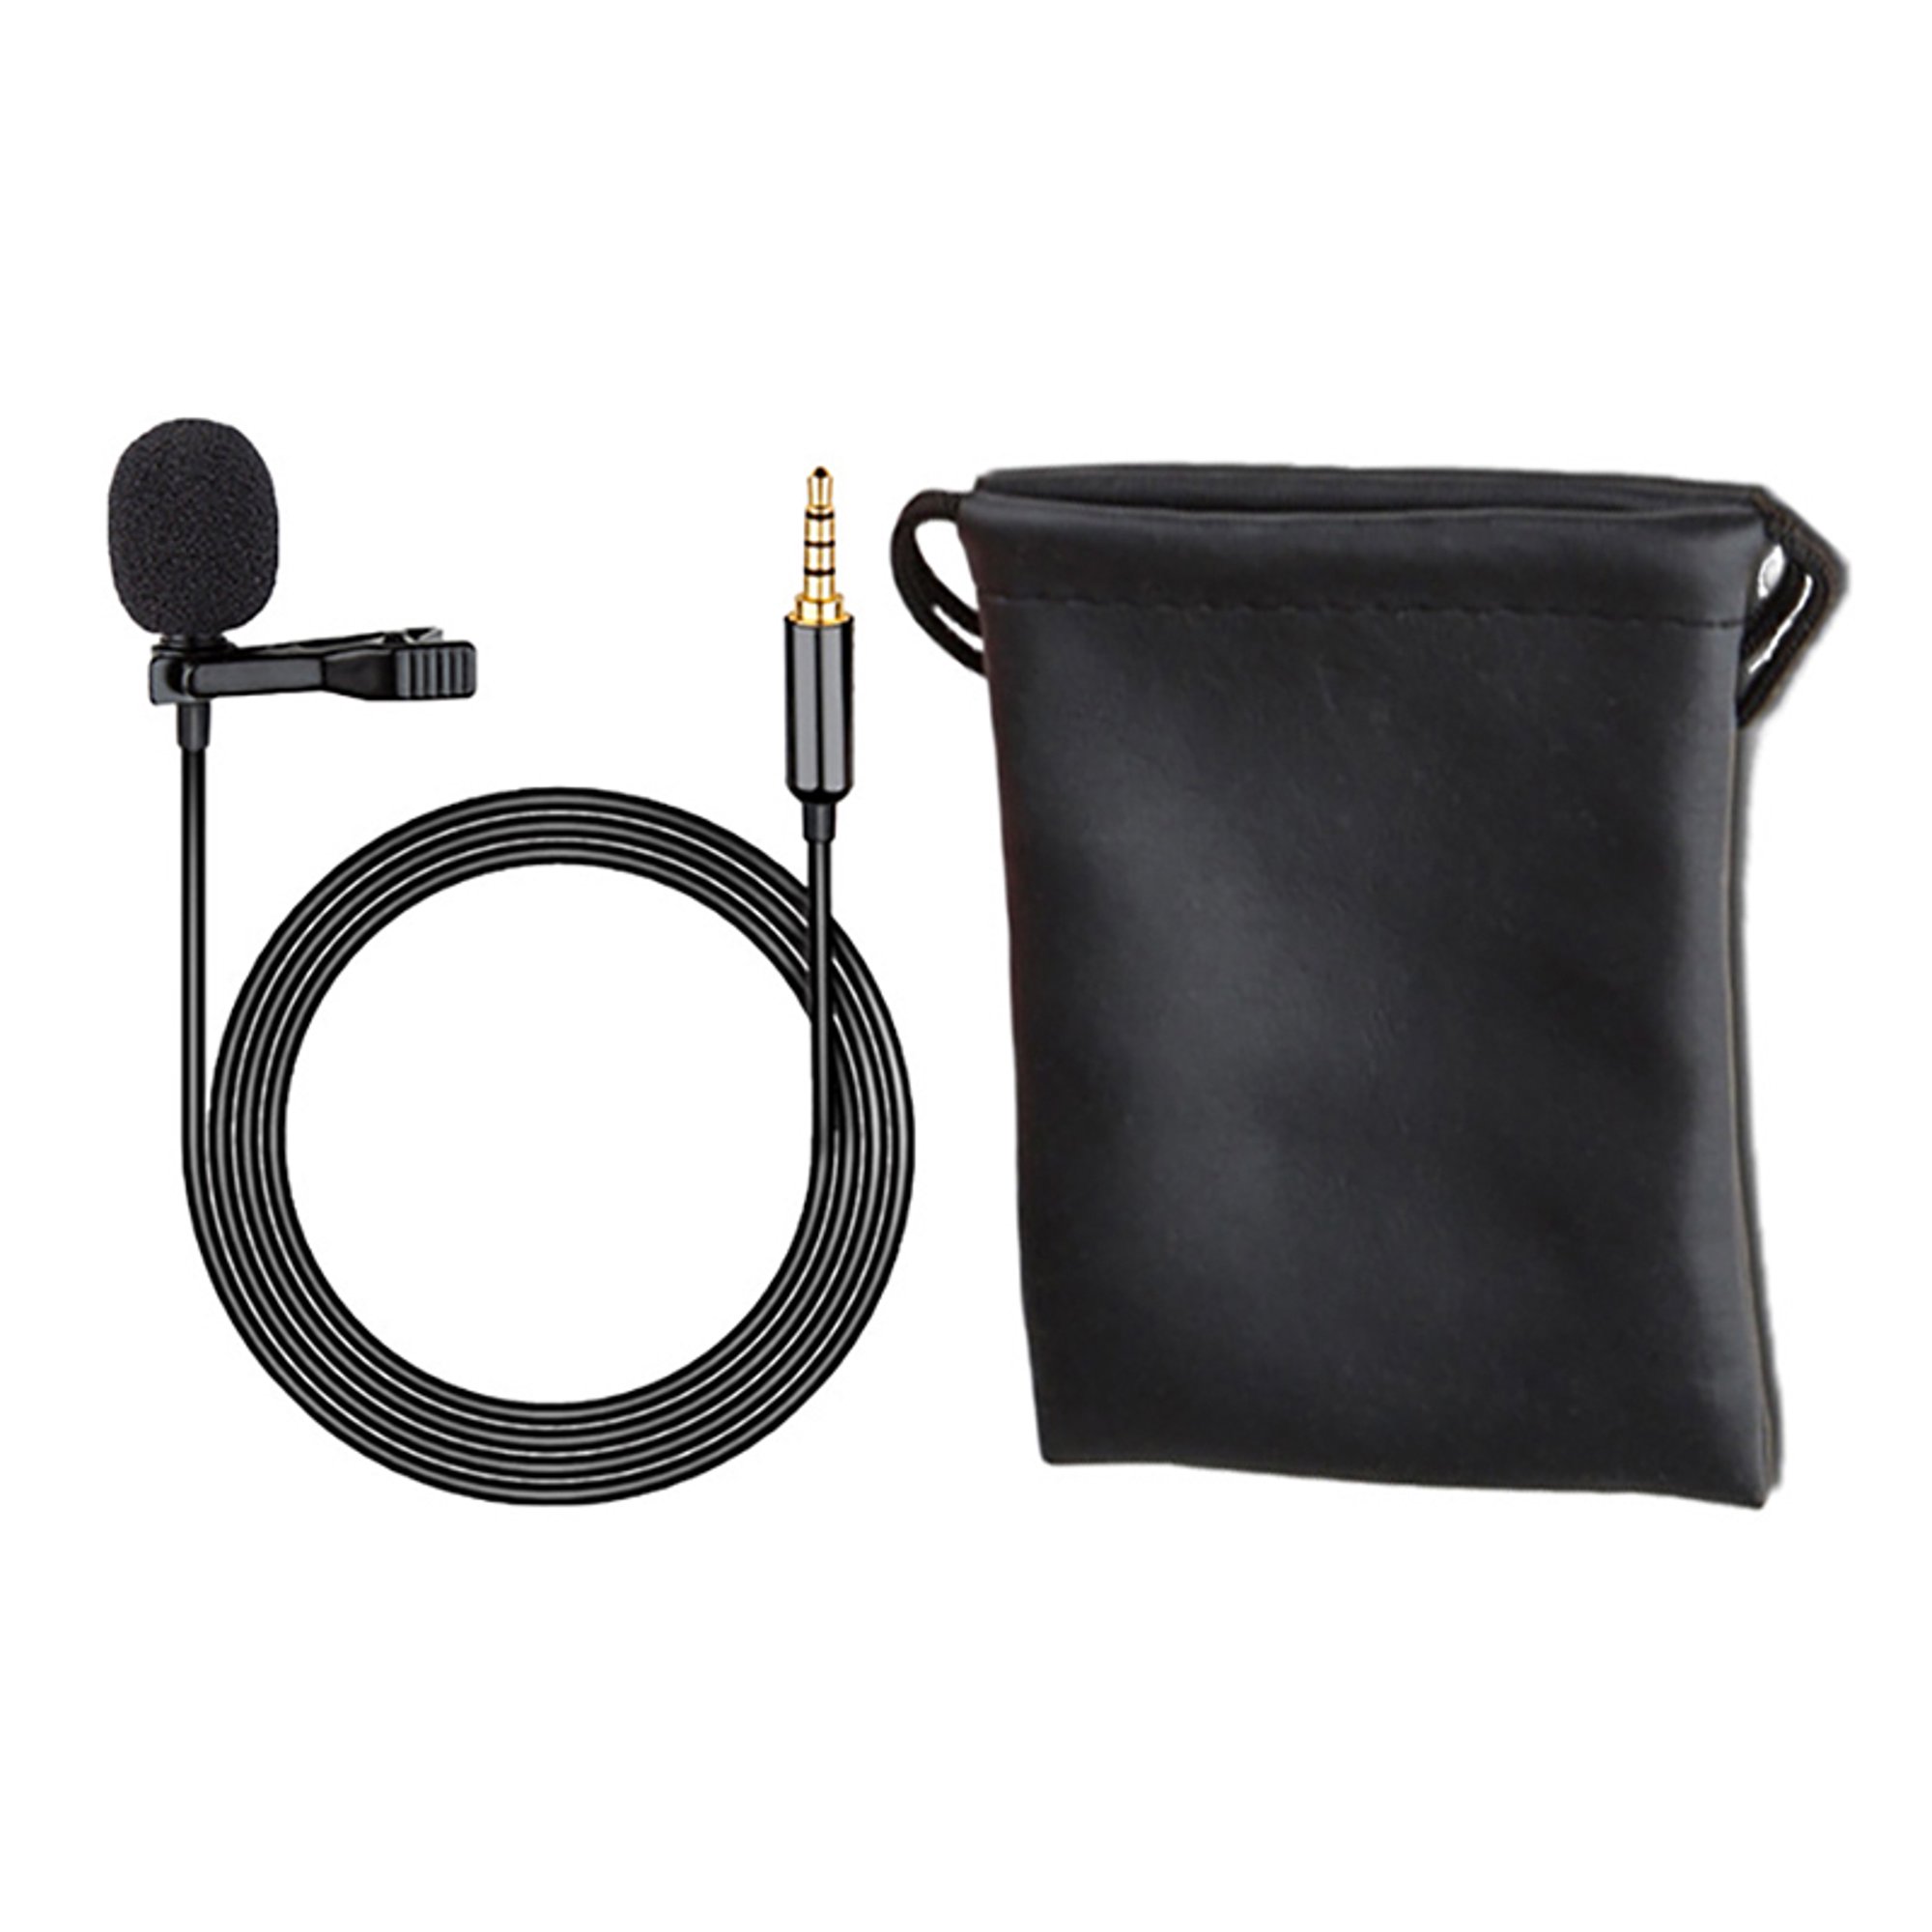 Micrófono Corbata Jack 3,5mm Grabación Omnidireccional Reducción Sonido  Negro con Ofertas en Carrefour